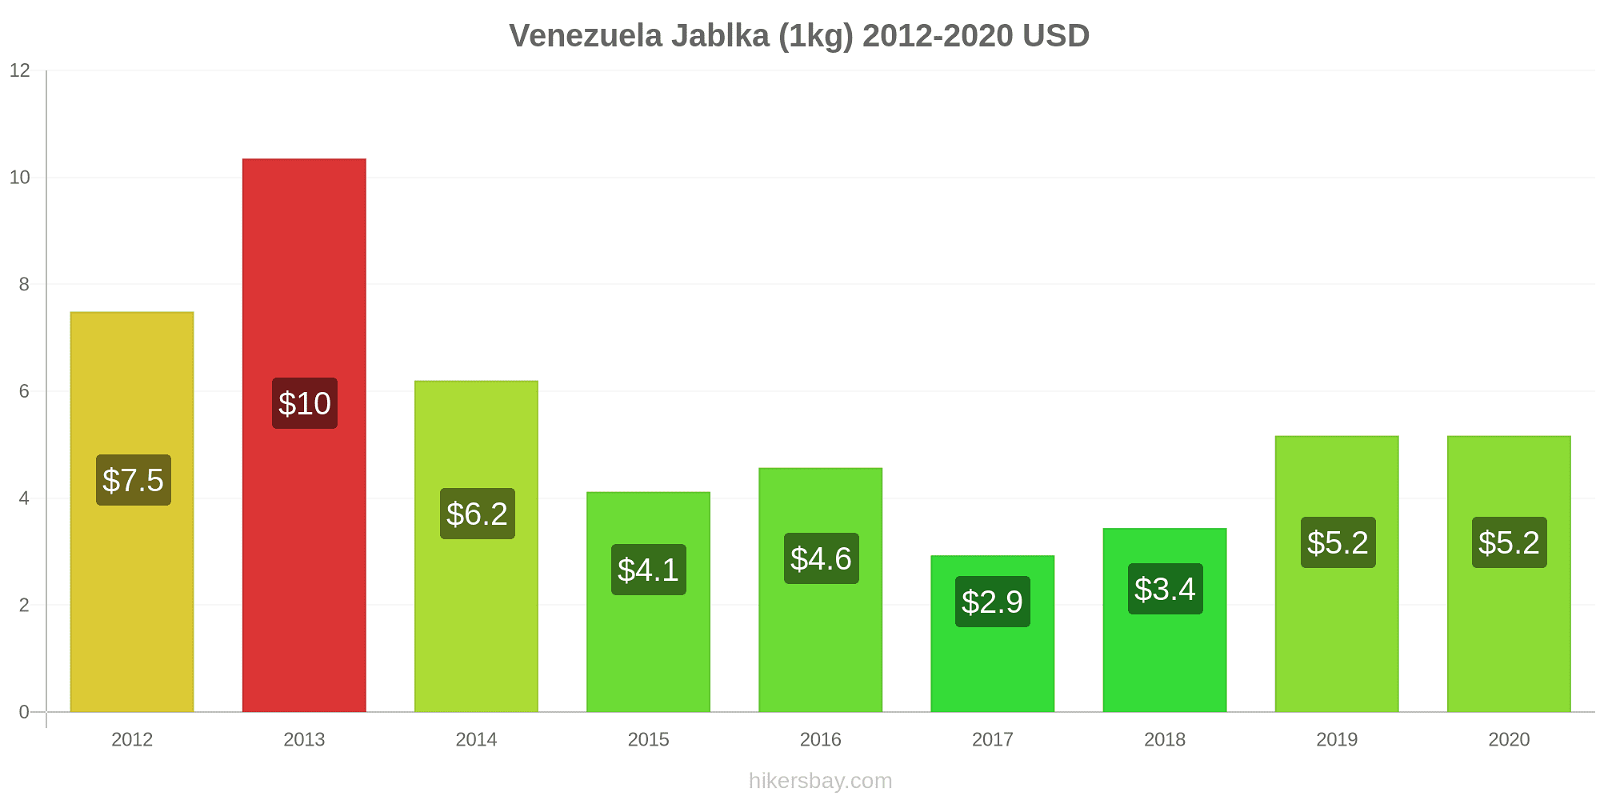 Venezuela změny cen Jablka (1kg) hikersbay.com